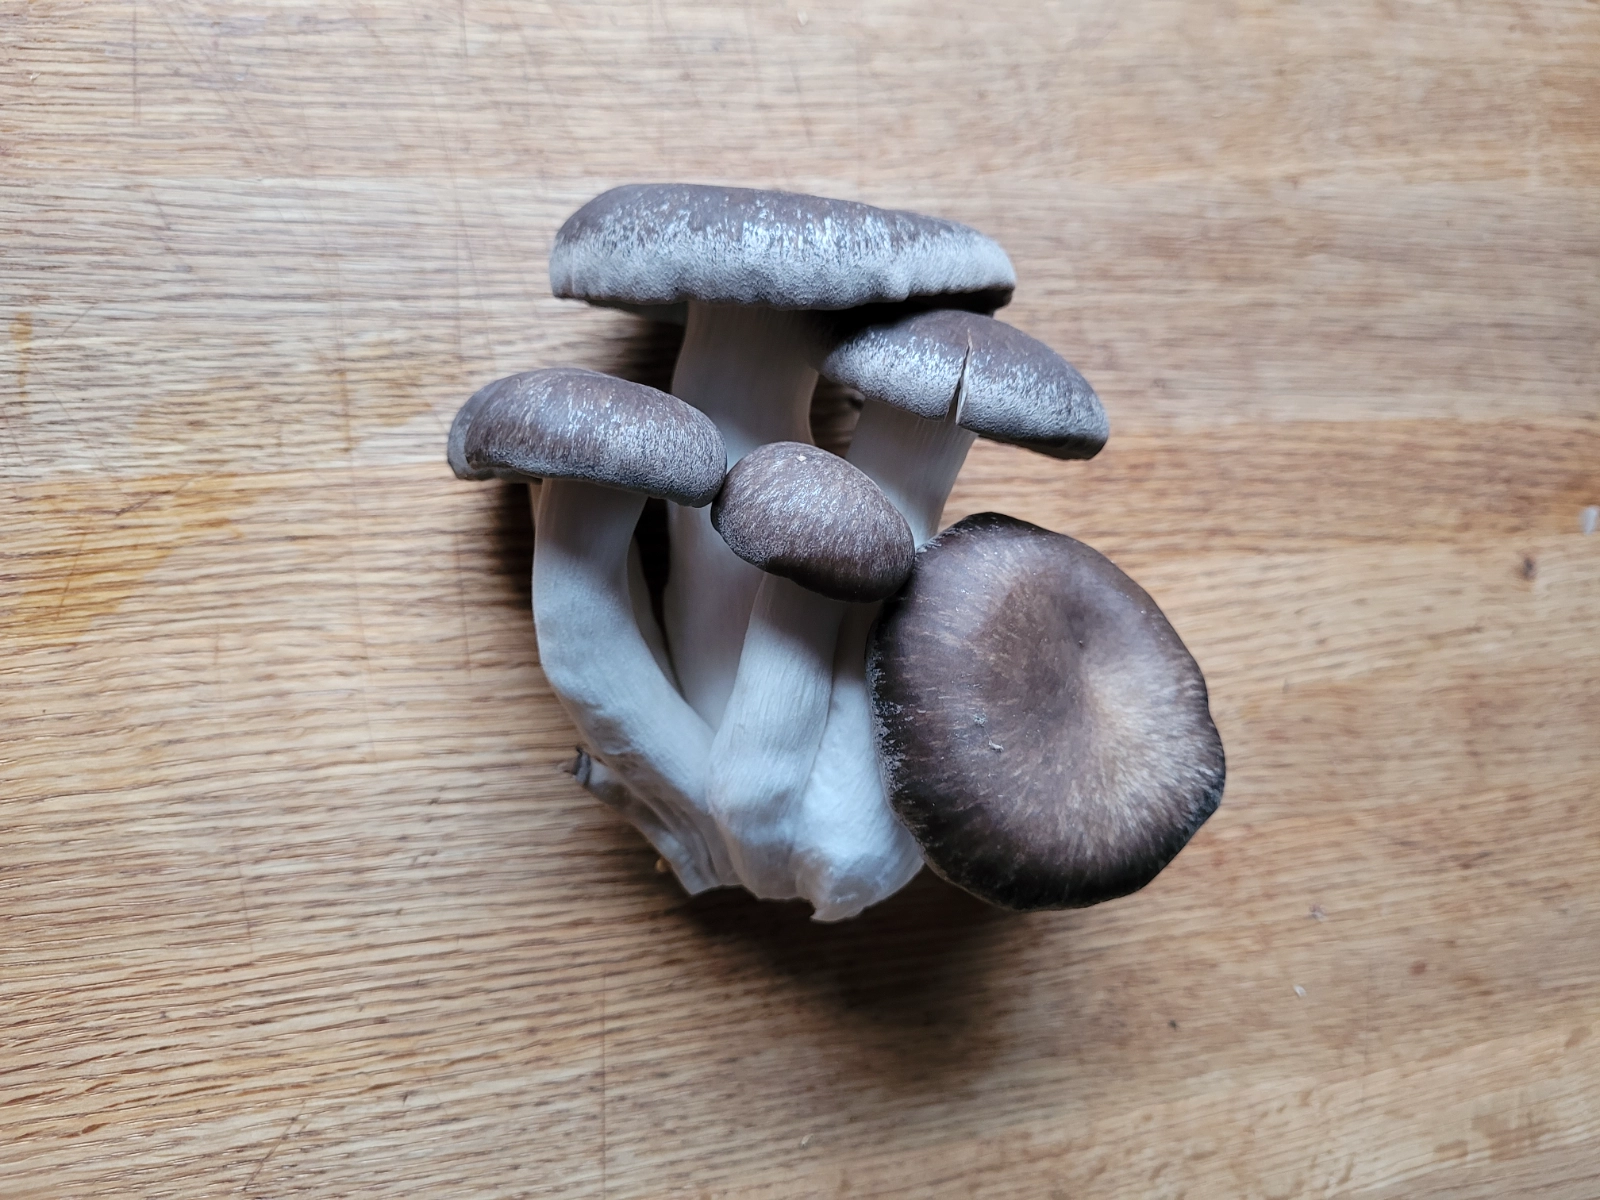 14-lb-black-king-oyster-mushrooms